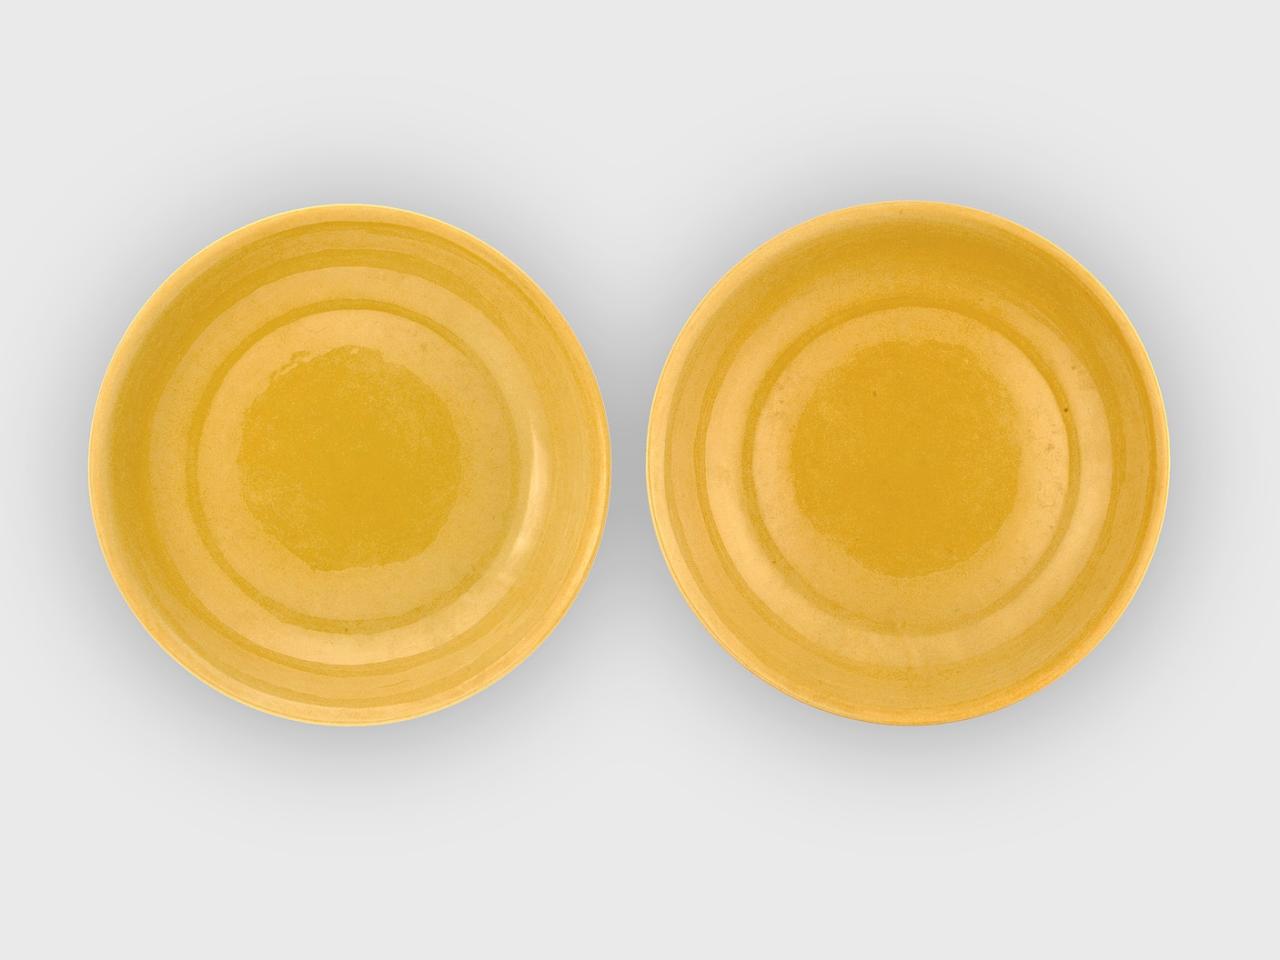 Farbfotografie von zwei gelben Teller von oben vor weißem Hintergrund.